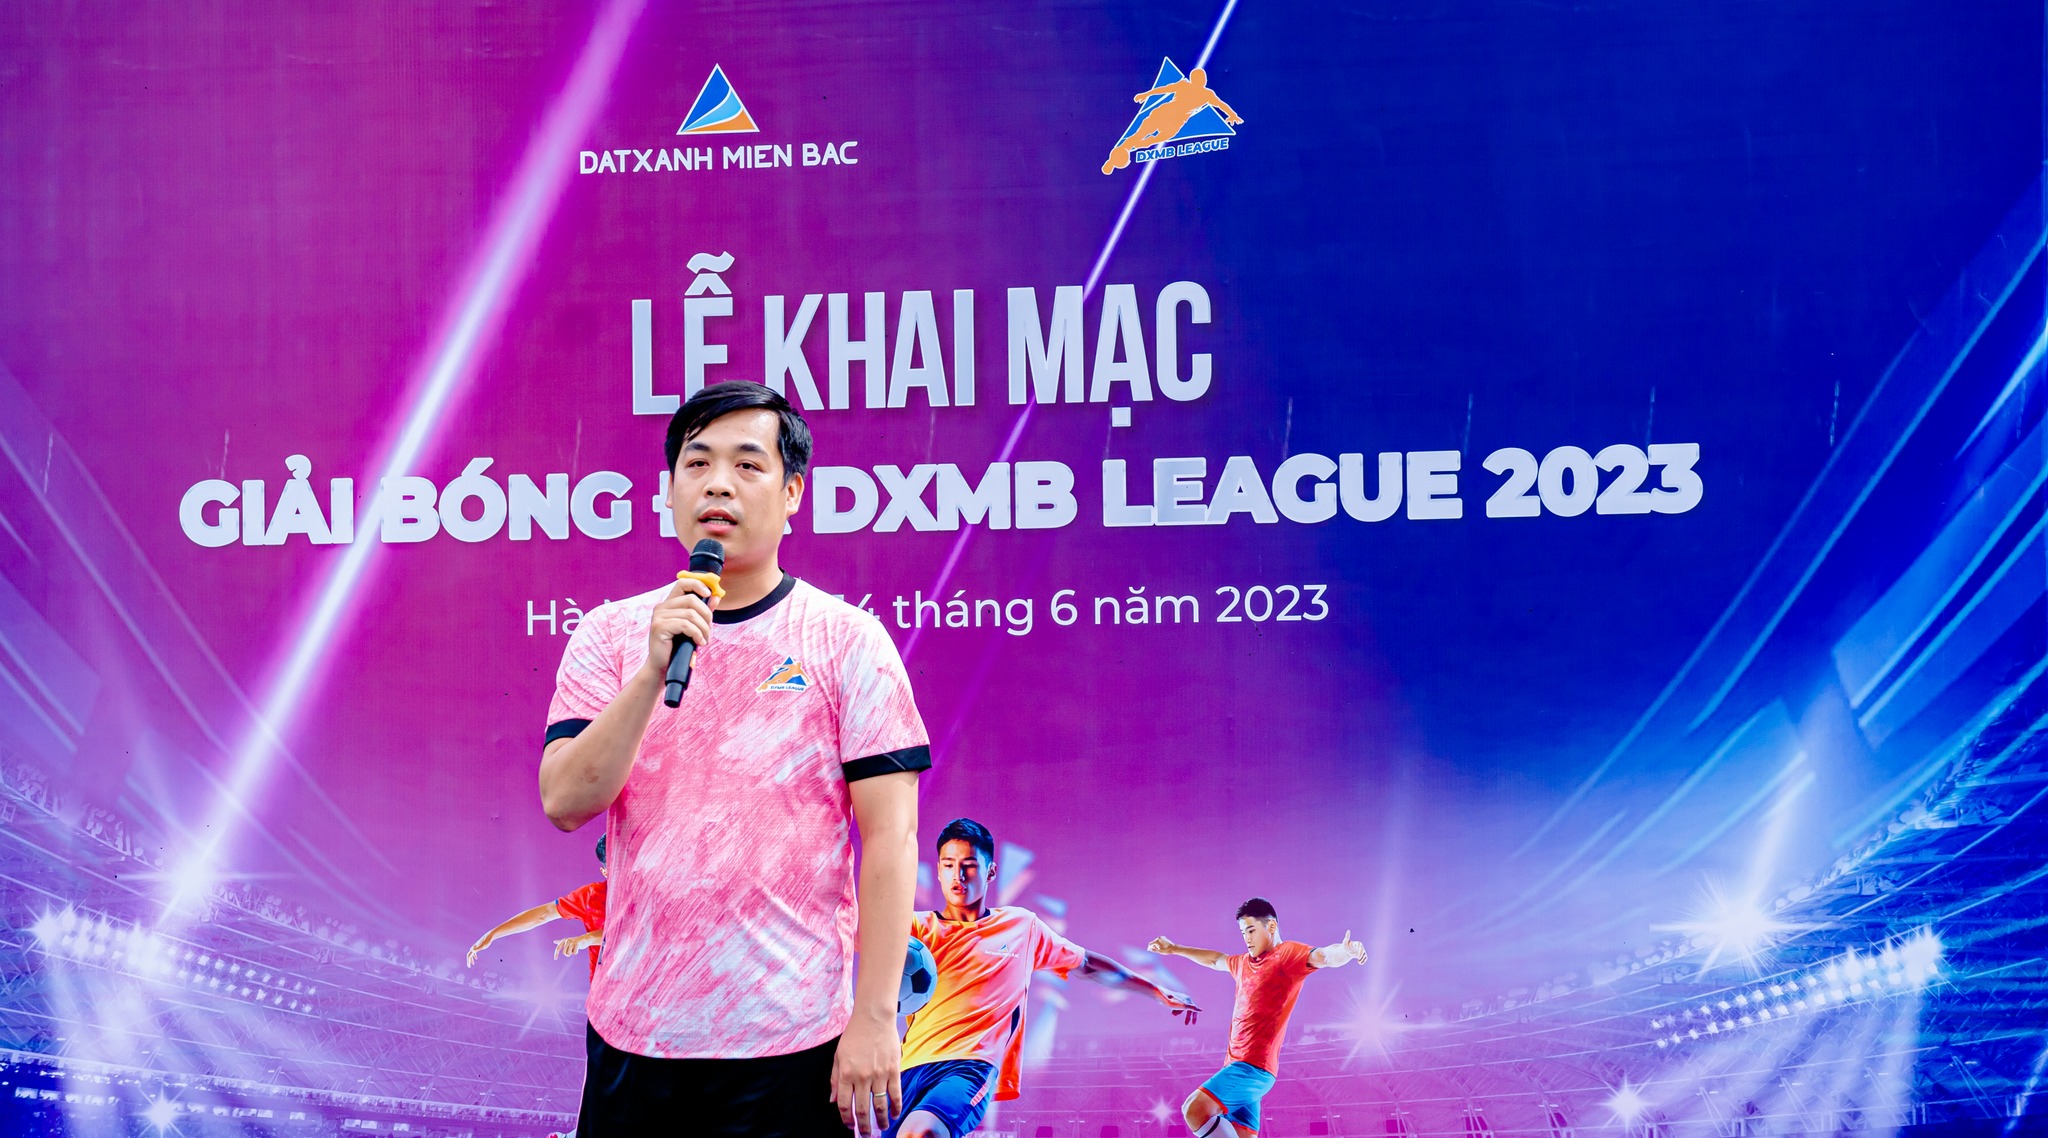 Khai mạc giải bóng đá Đất Xanh Miền Bắc League 2023